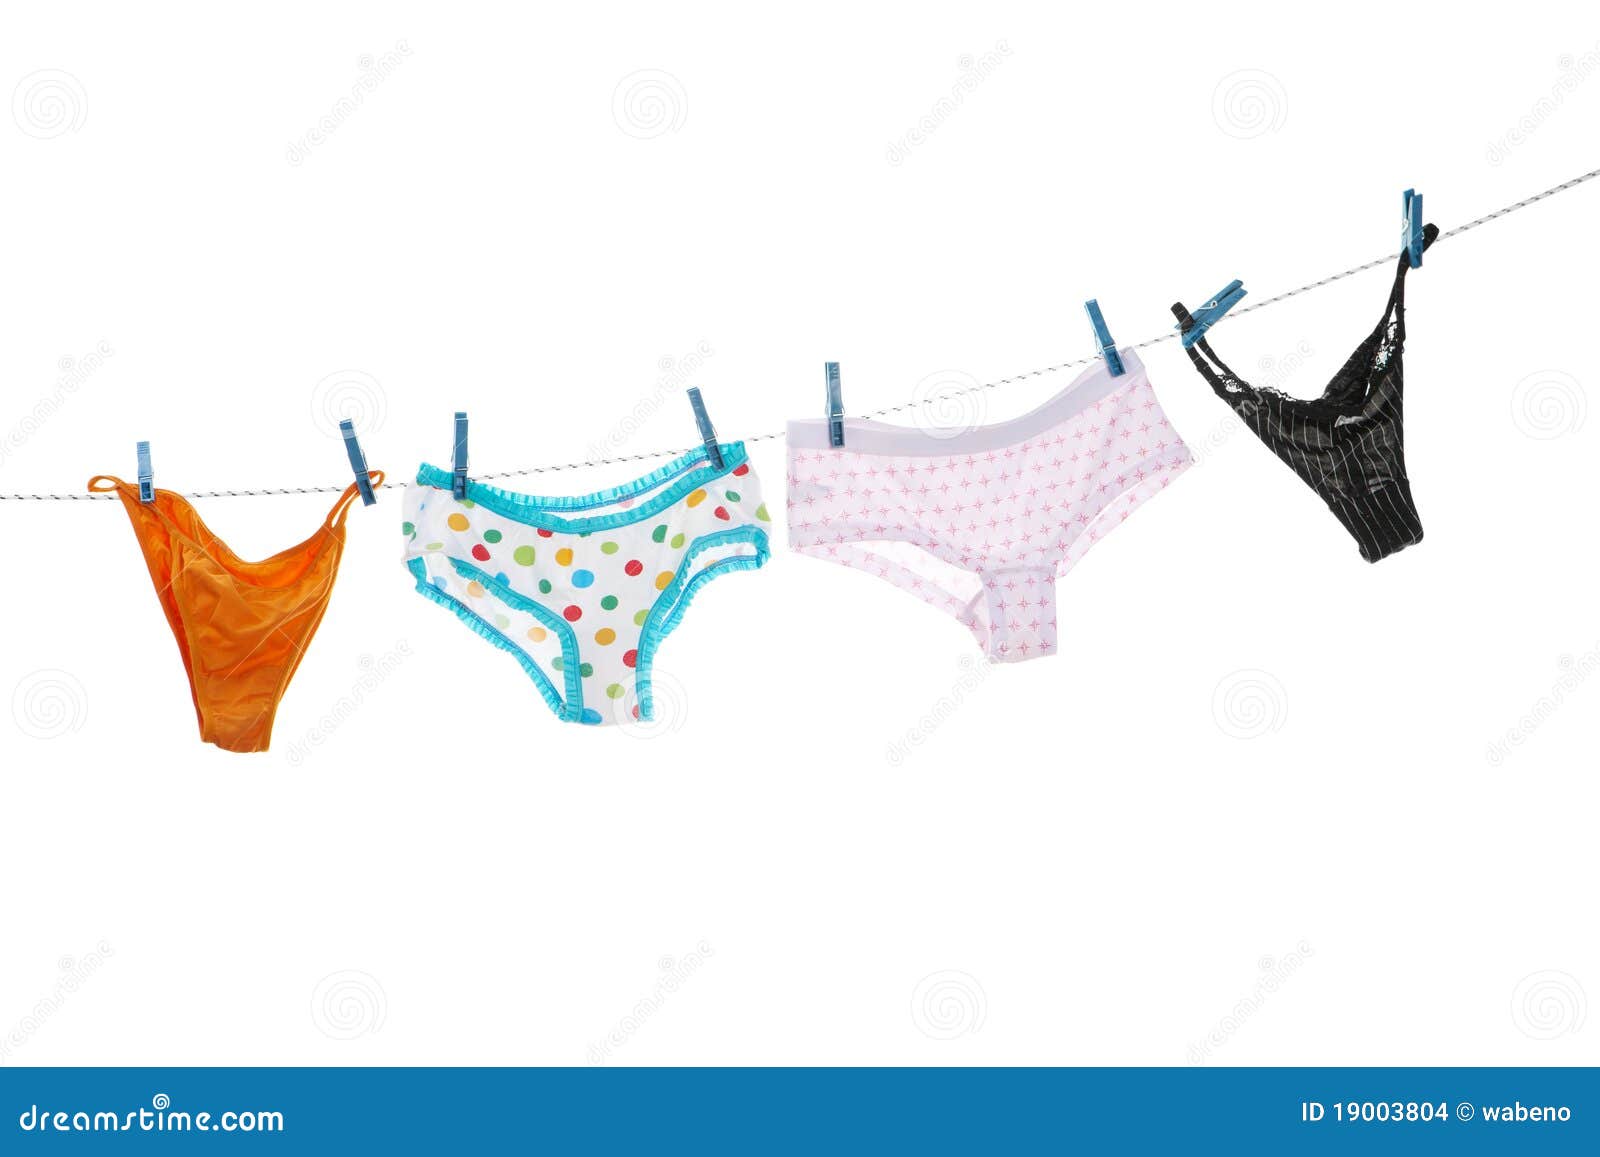 free clipart underwear - photo #47